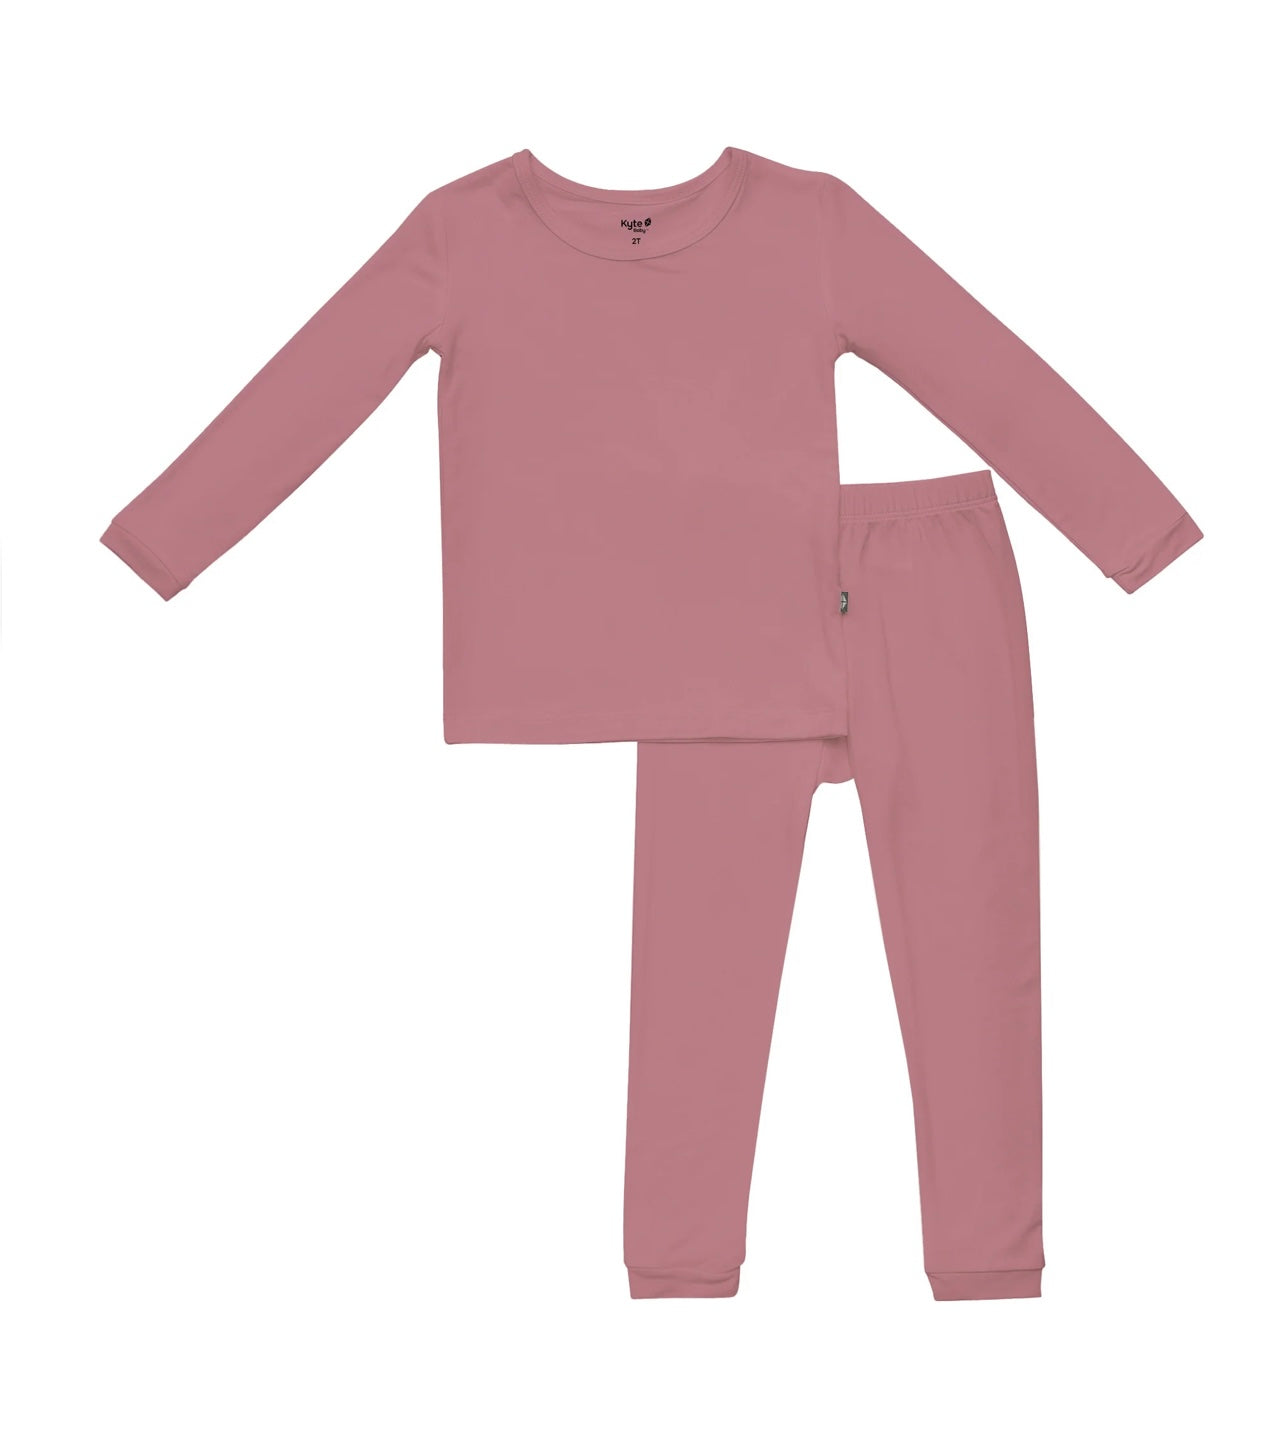 Dusty Rose Toddler Pajamas